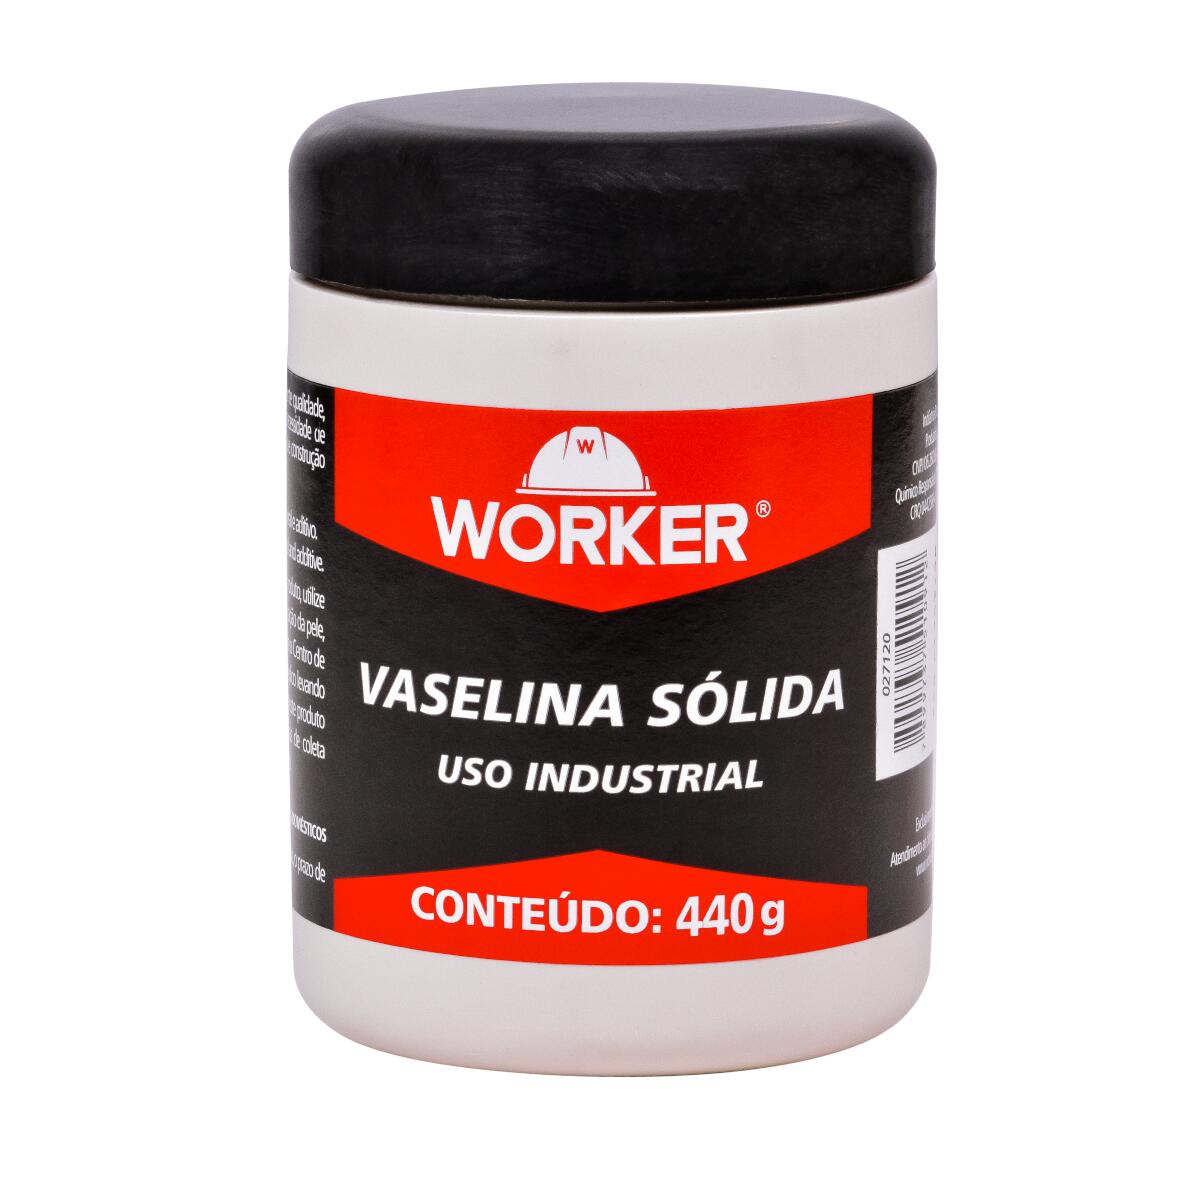 Vaselina Sólida Industrial 440g Worker em oferta!